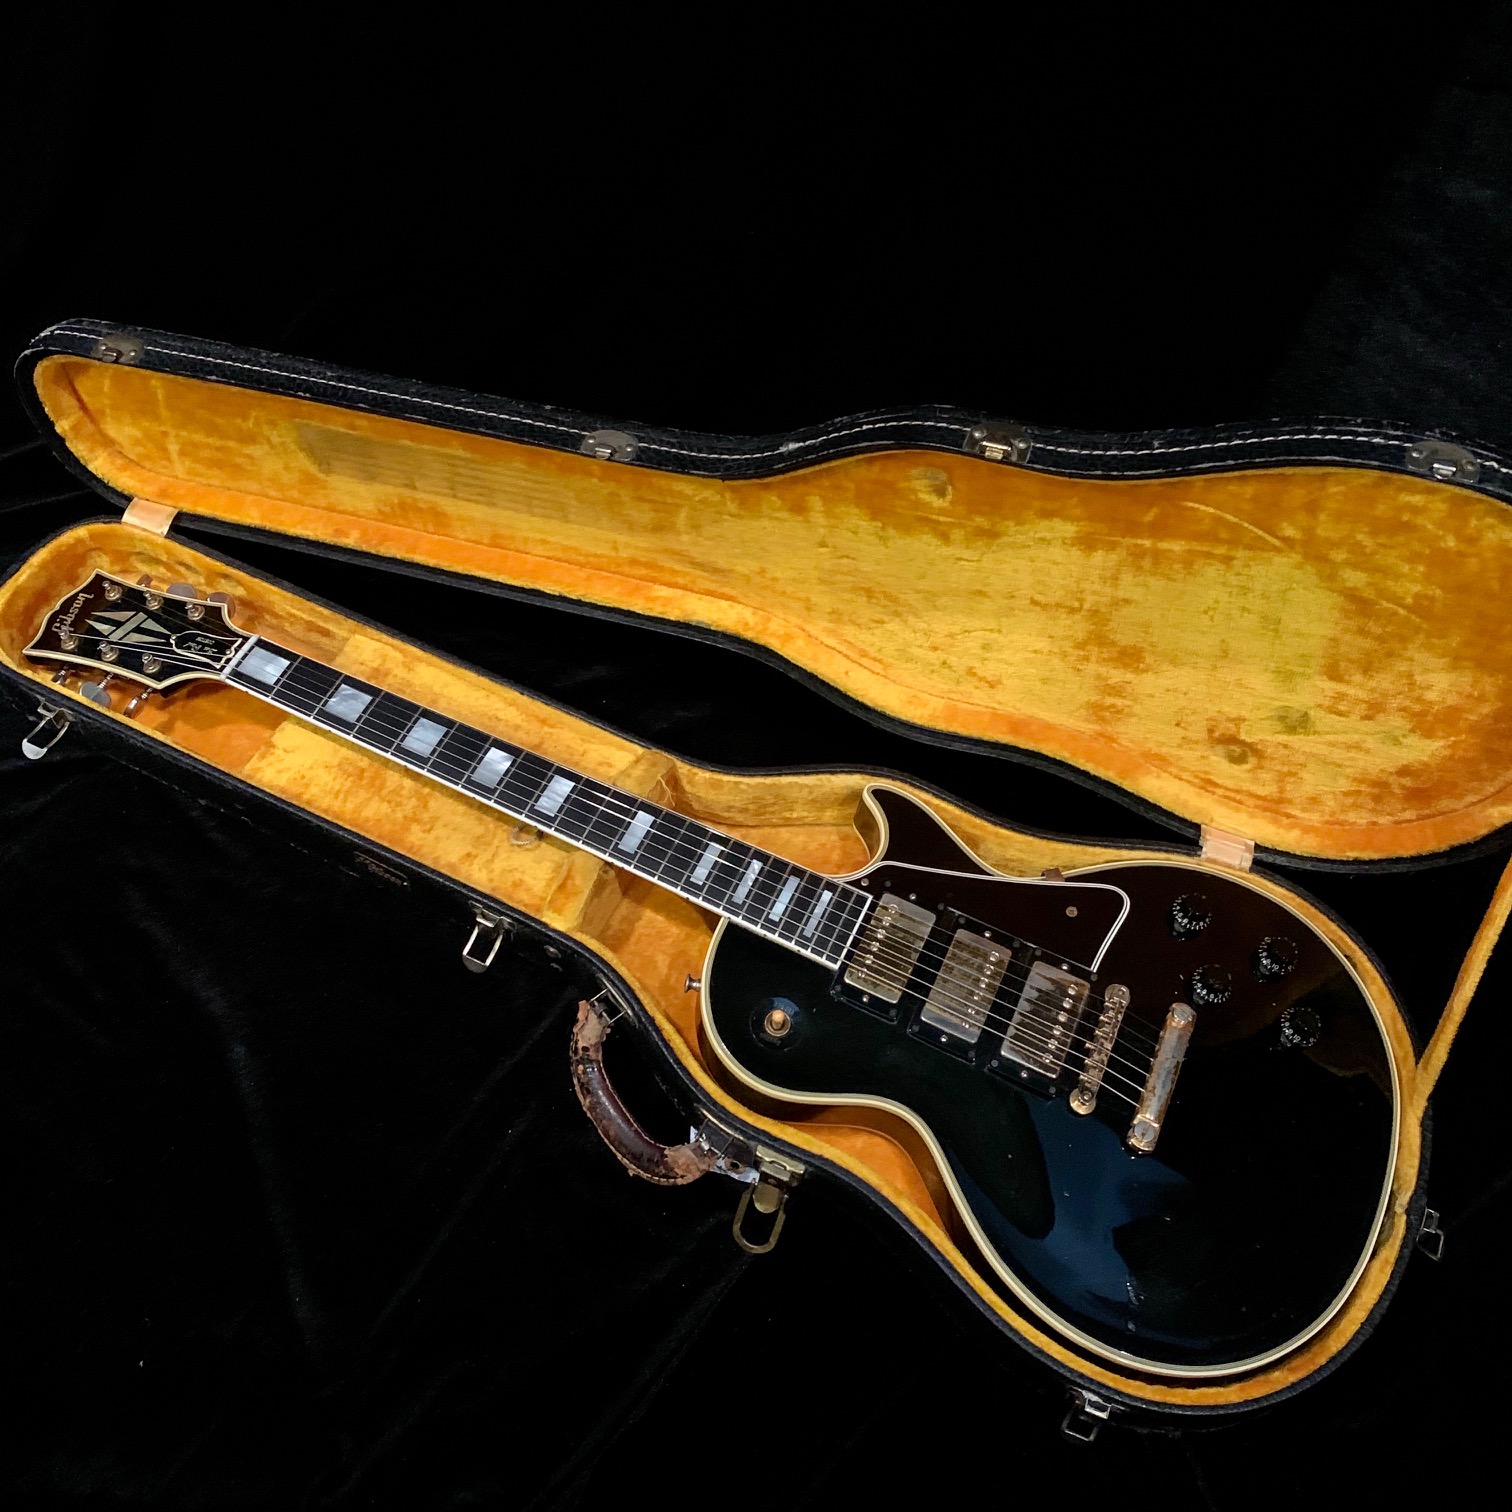 Drew Berlin's Vintage Guitars | 1960 Gibson Les Paul Custom Black